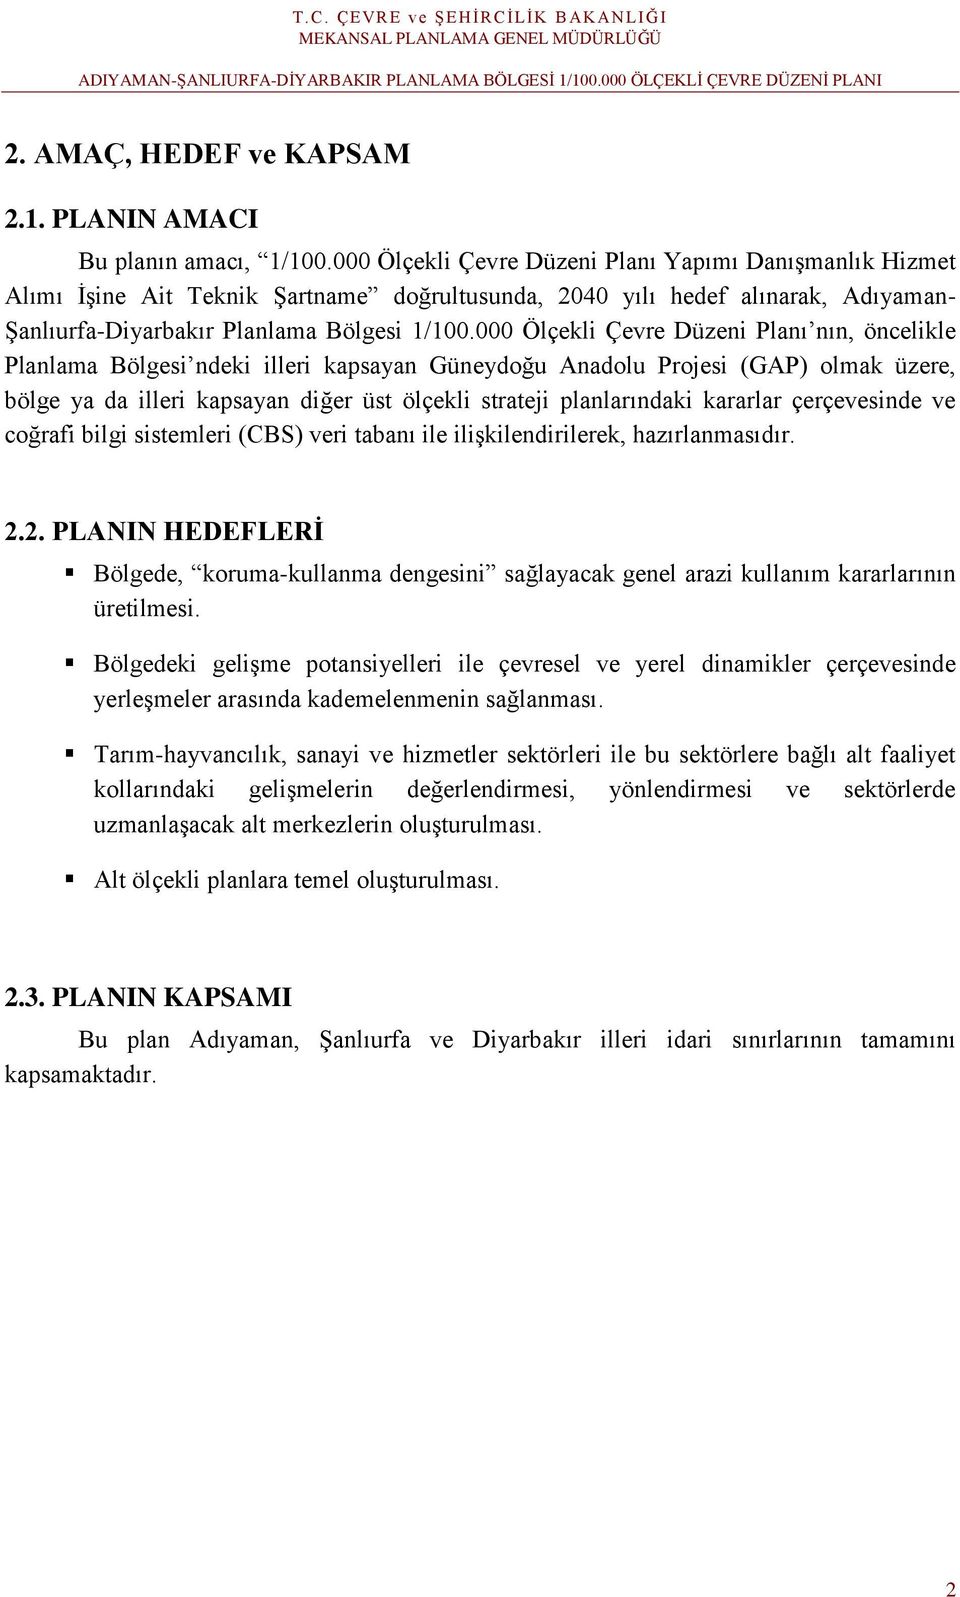 000 Ölçekli Çevre Düzeni Planı nın, öncelikle Planlama Bölgesi ndeki illeri kapsayan Güneydoğu Anadolu Projesi (GAP) olmak üzere, bölge ya da illeri kapsayan diğer üst ölçekli strateji planlarındaki